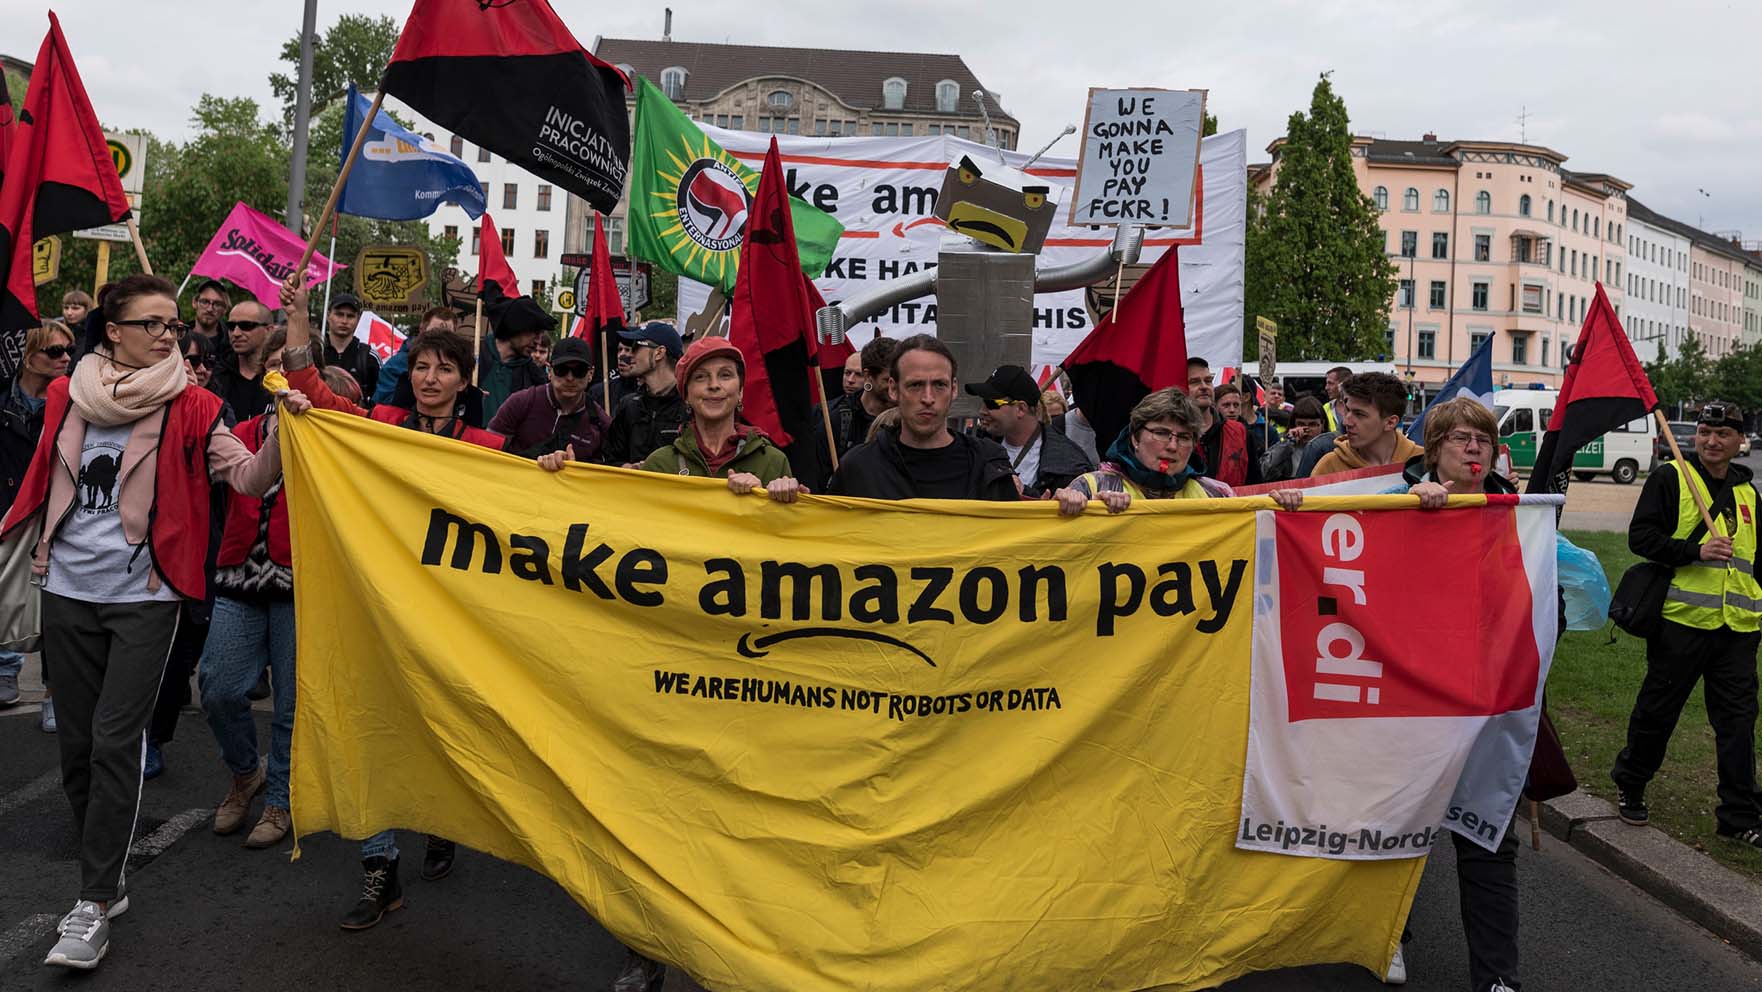 מחאת Make Amazon pay בברלין (Photo by Markus Heine/SOPA Images/LightRocket via Getty Images)